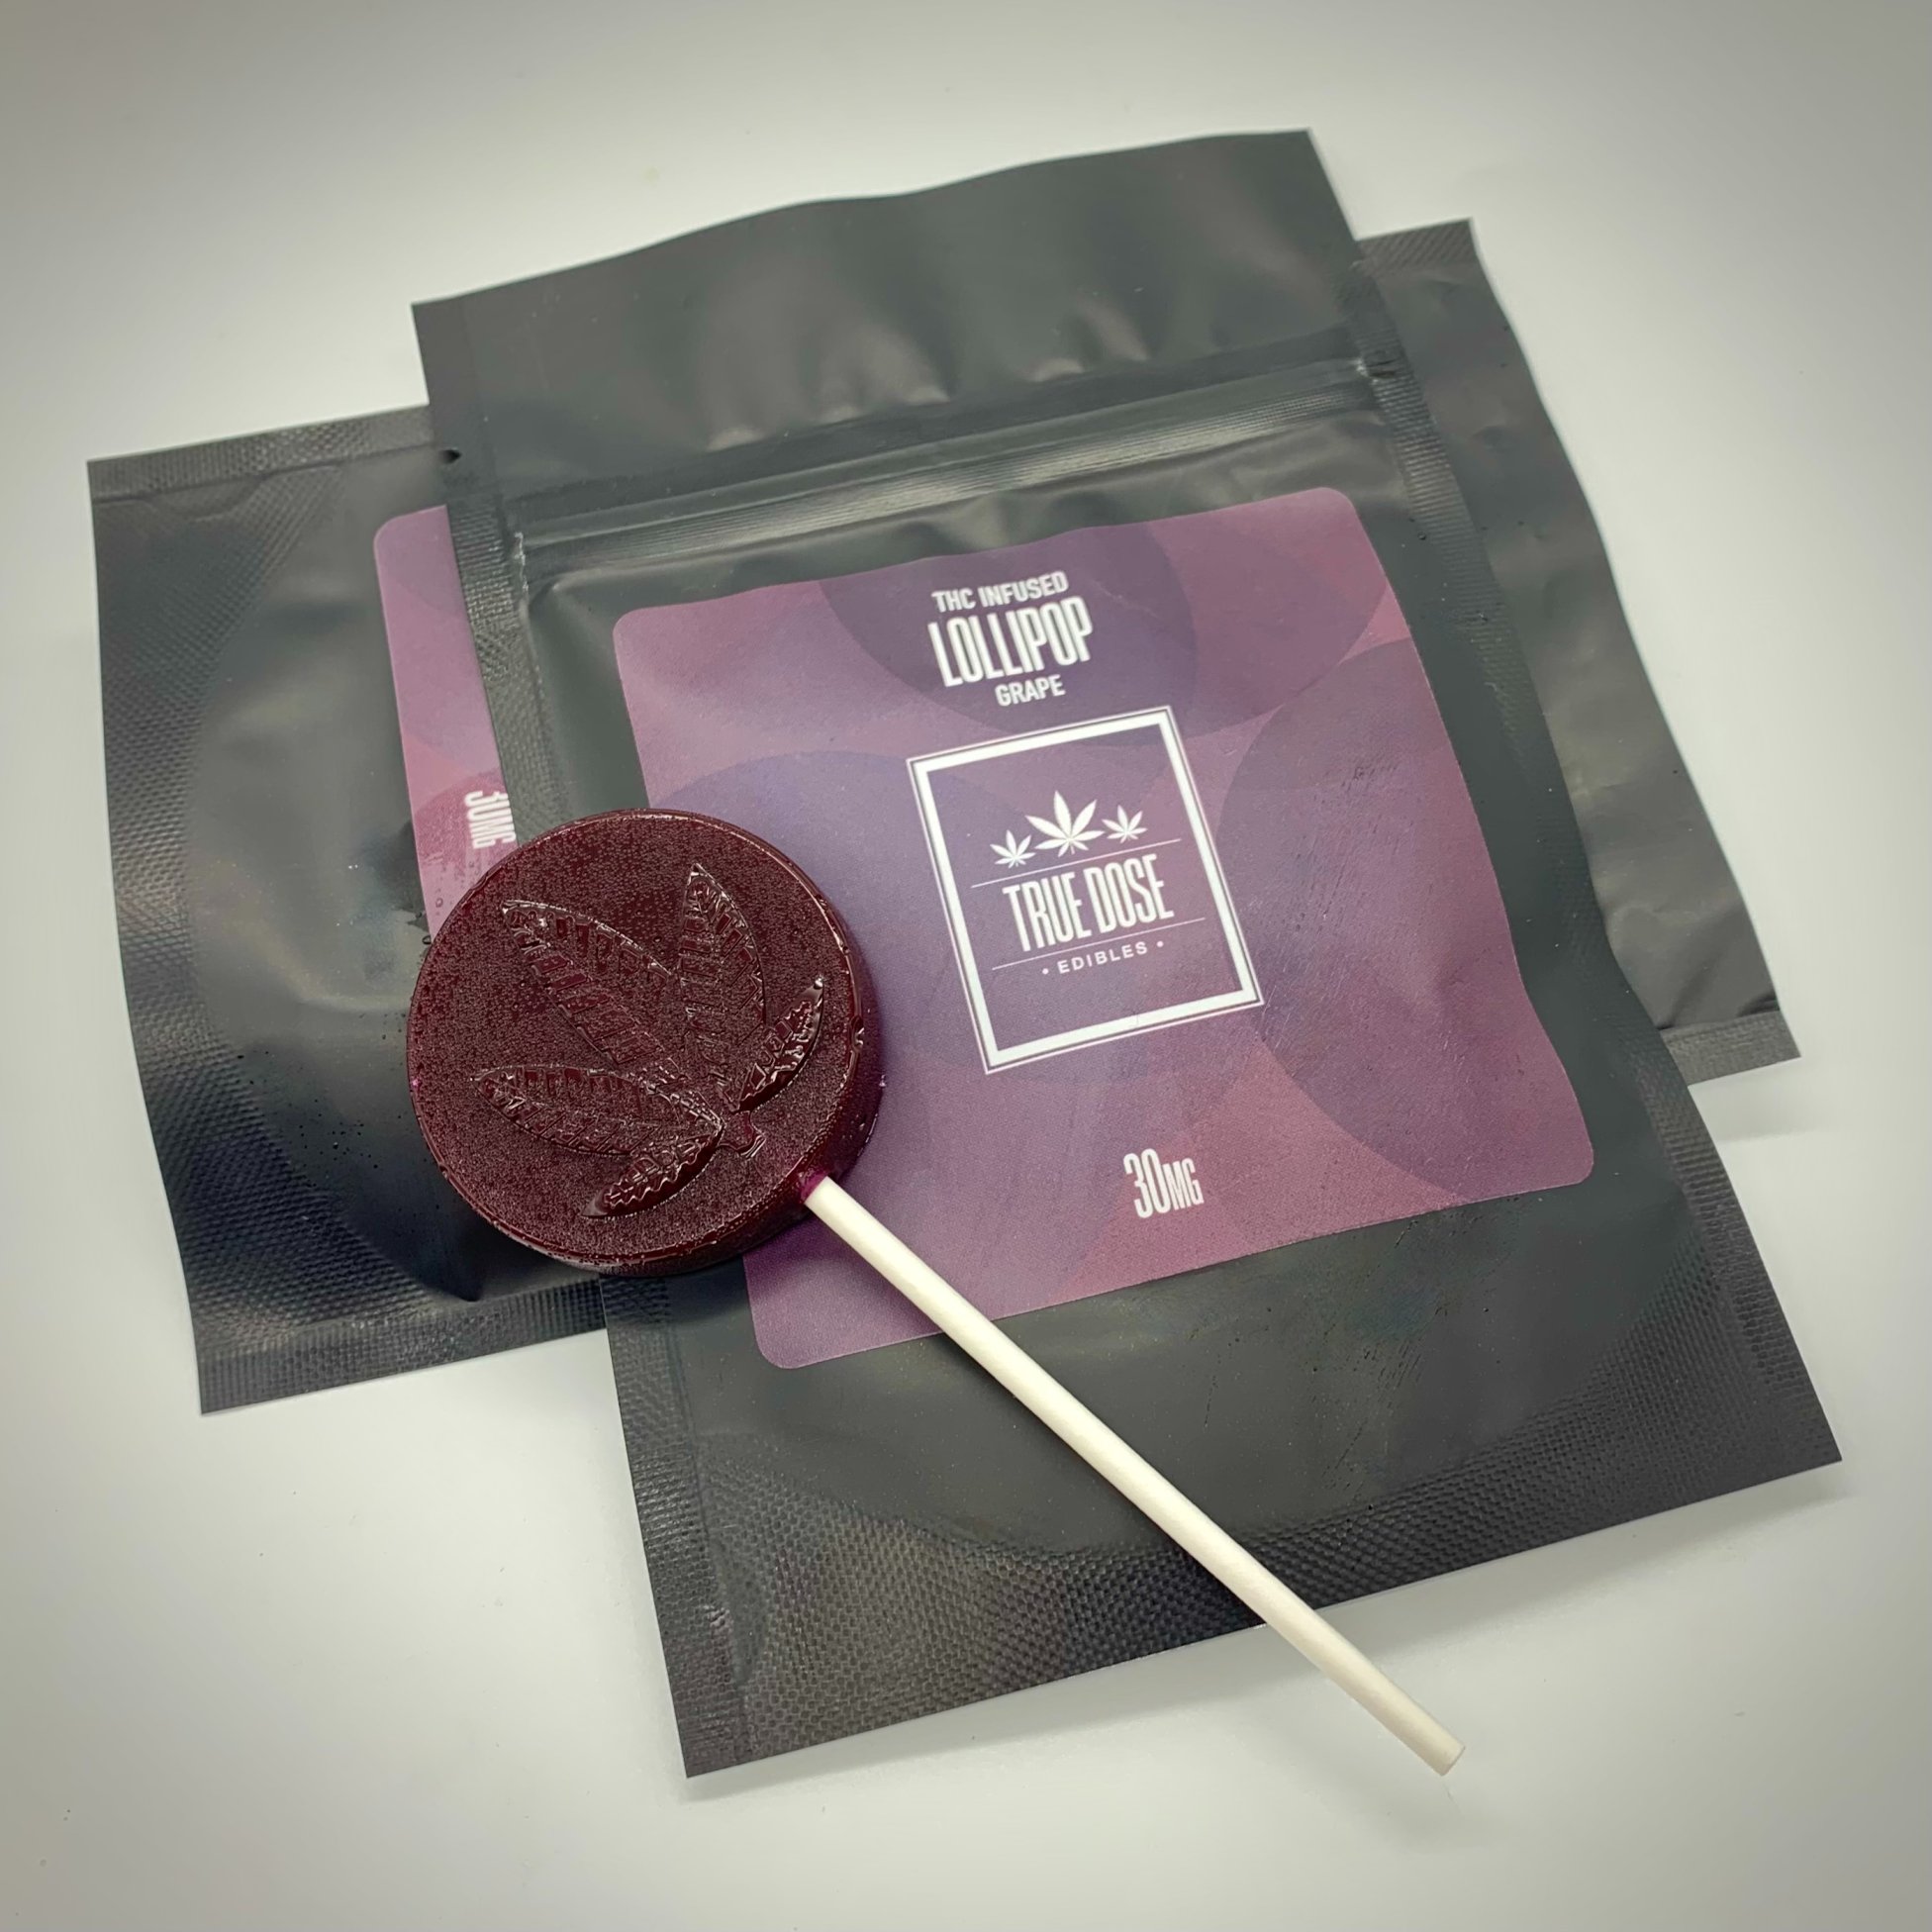 Lollipop: Grape